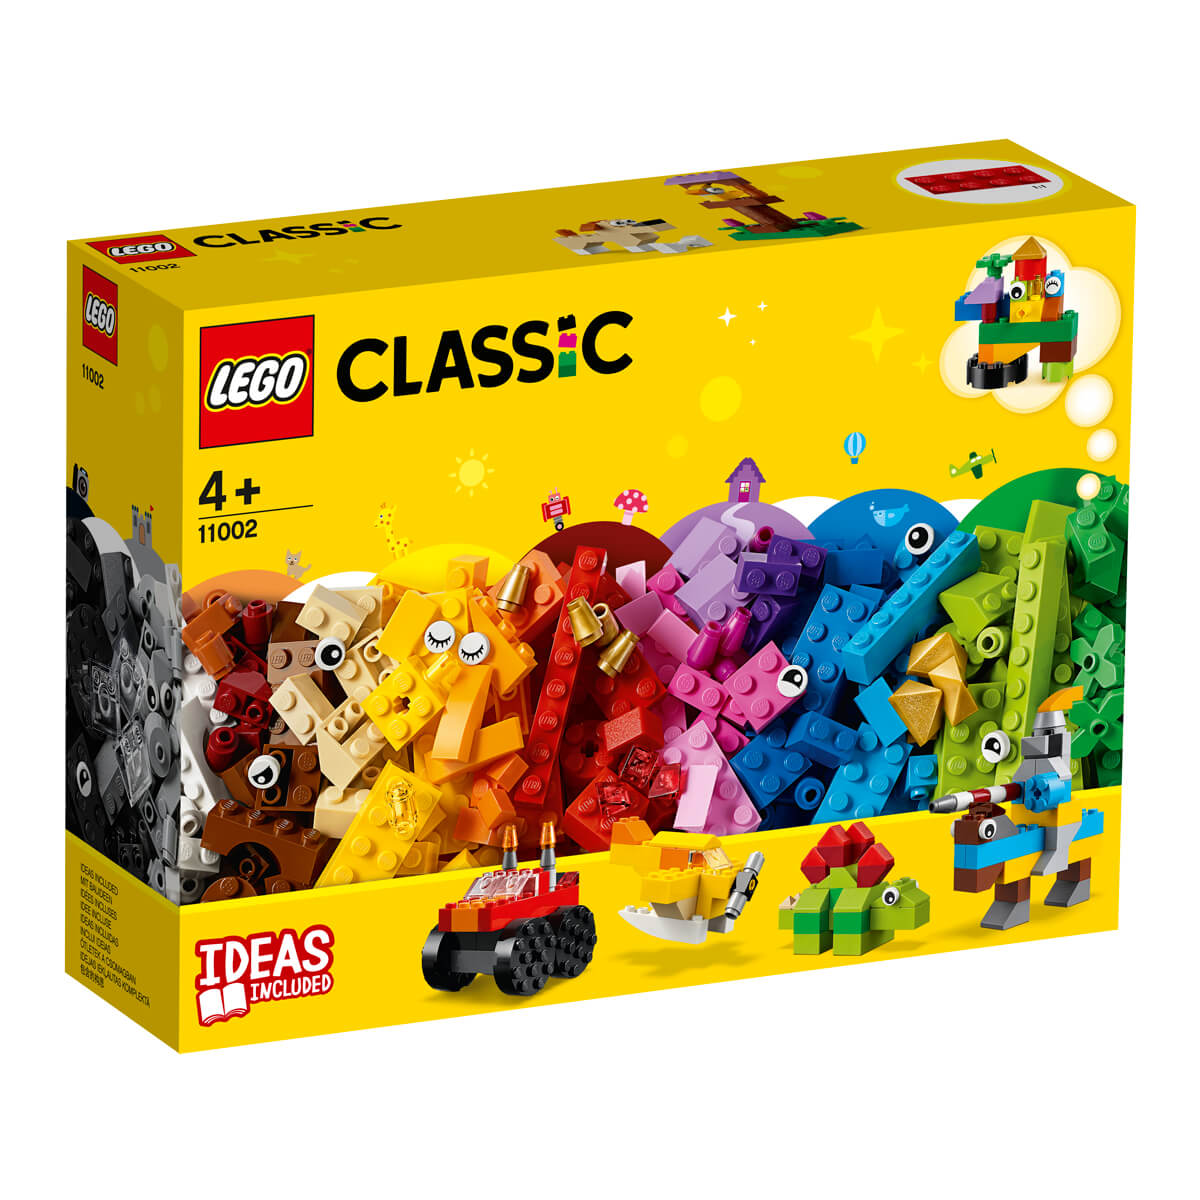 ΠΑΙΔΙ | Παιχνίδια | LEGO | LEGO CLASSIC 11002 Basic Brick Set